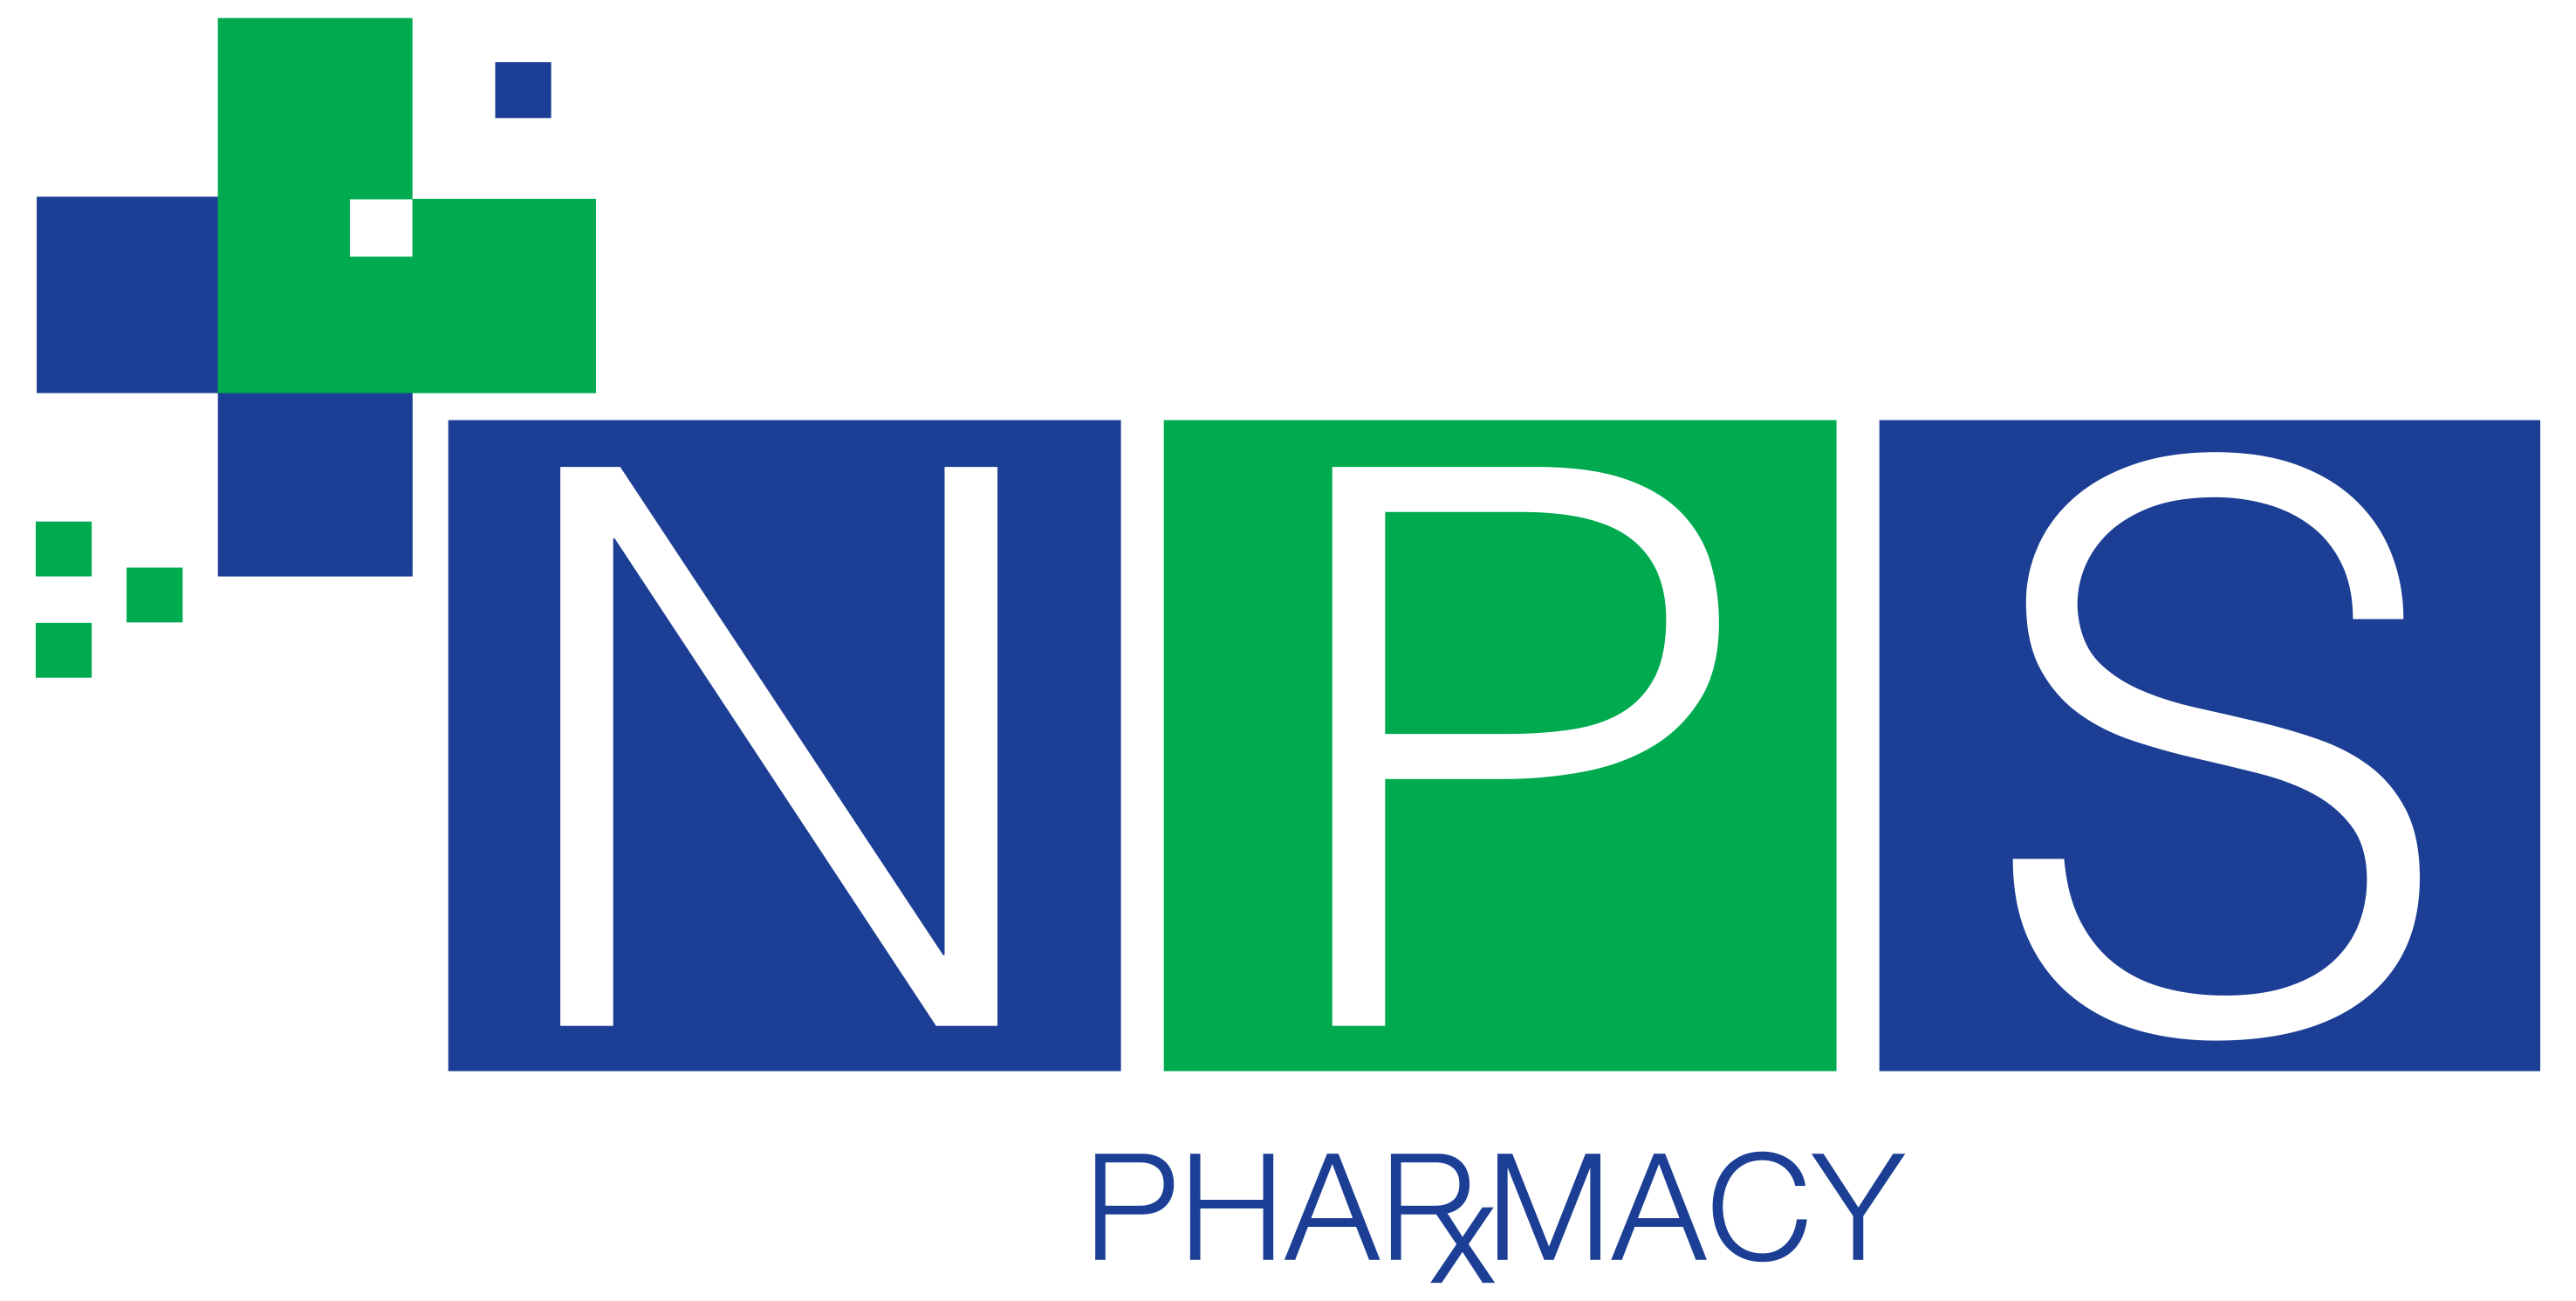 NPS Full Logo